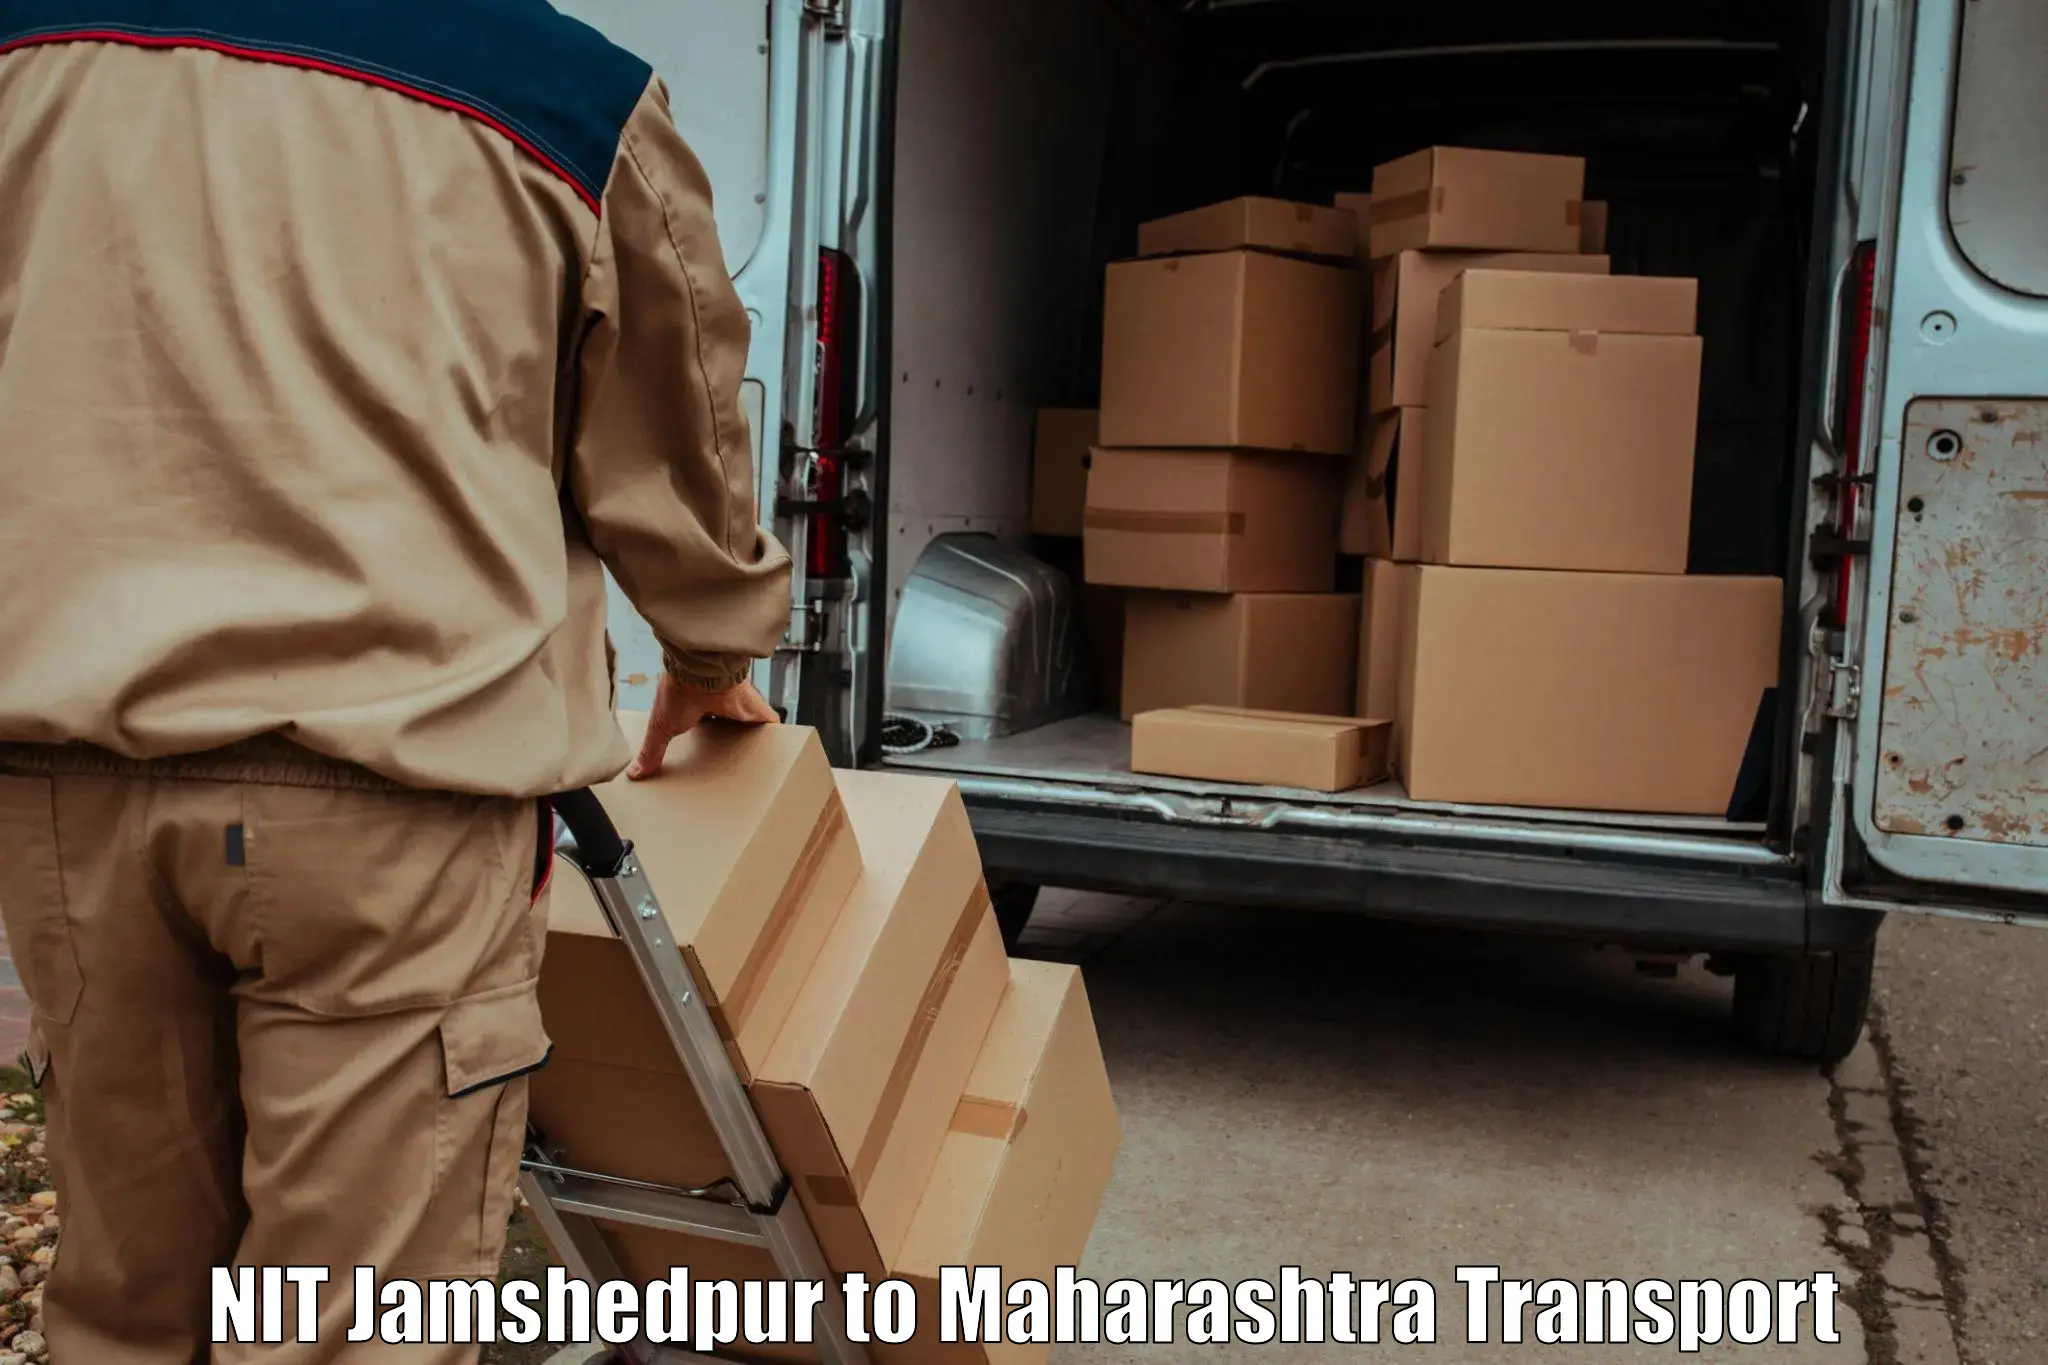 Furniture transport service NIT Jamshedpur to Jamner